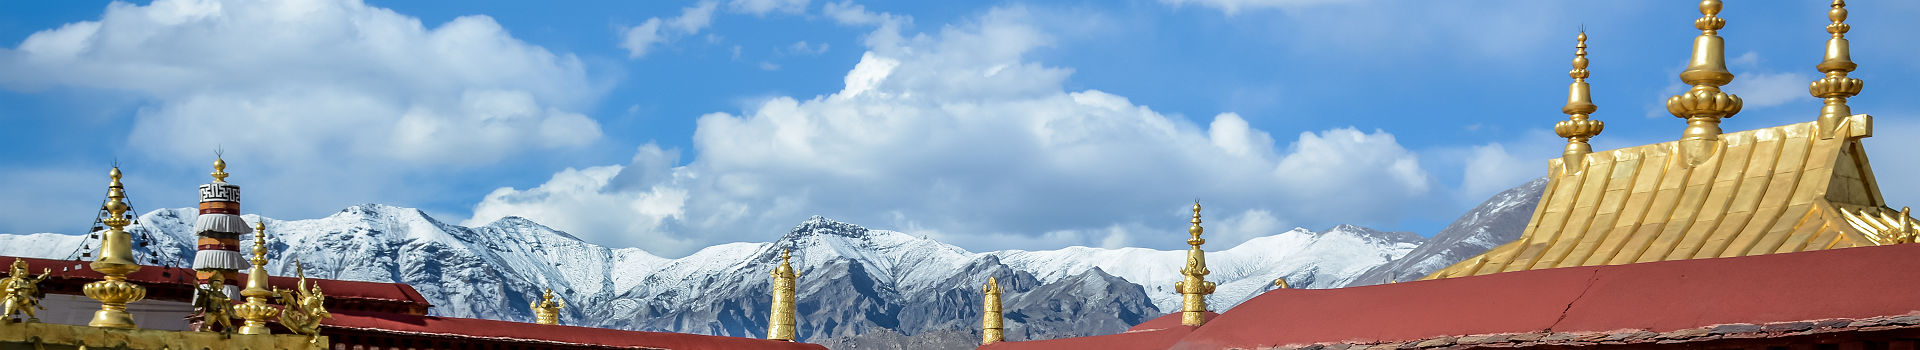 Tibet - Cour intérieure du temple bouddhiste Jokhang à Lhassa avec les montagnes Himalaya en arrière-plan